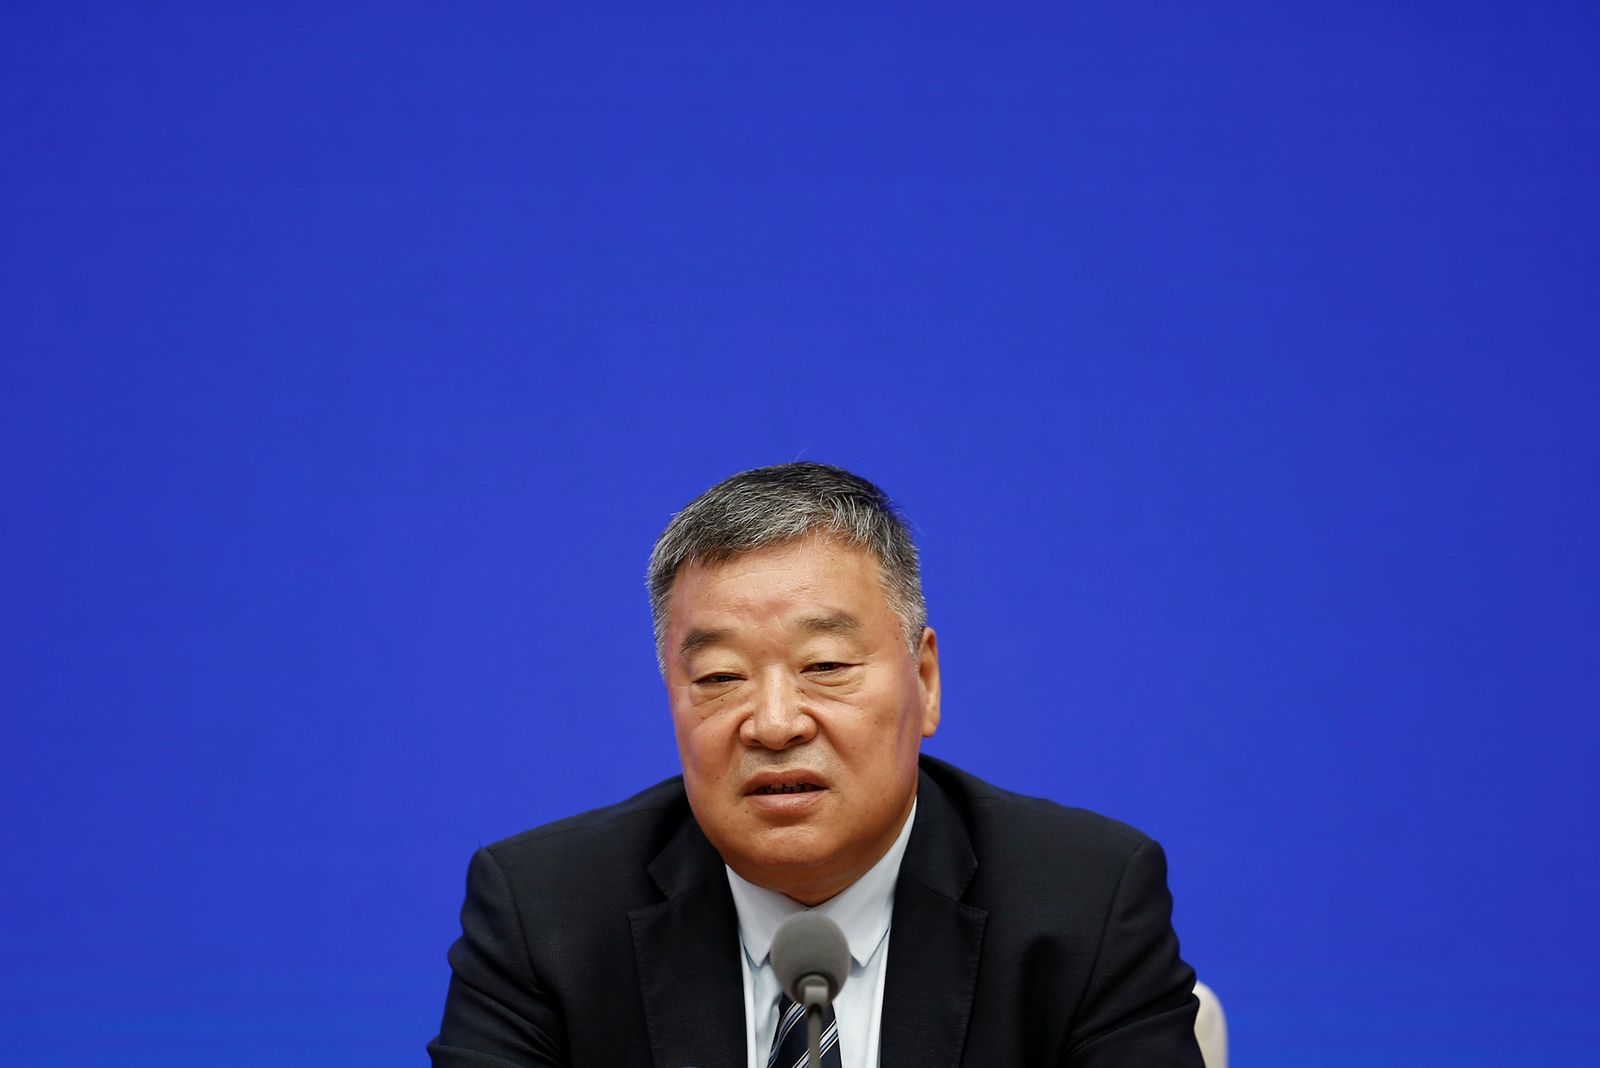 عالم الأوبئة الصيني ليانغ وانيان خلال مؤتمر صحافي في بكين - 22 يوليو 2021 - REUTERS